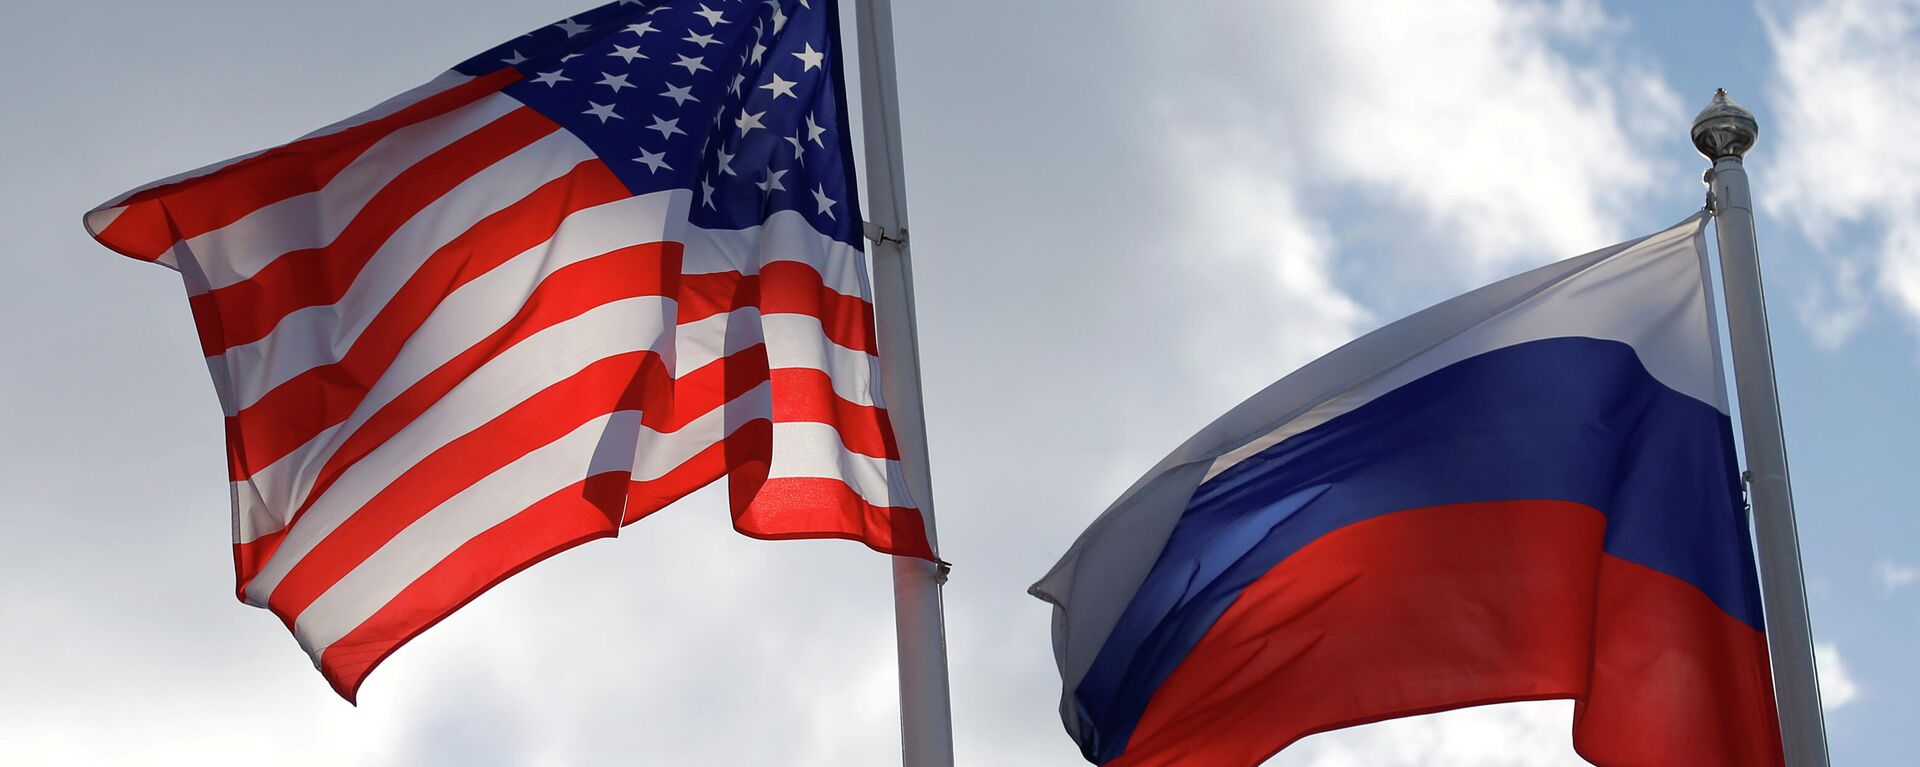 Banderas de EEUU y Rusia - Sputnik Mundo, 1920, 28.04.2021